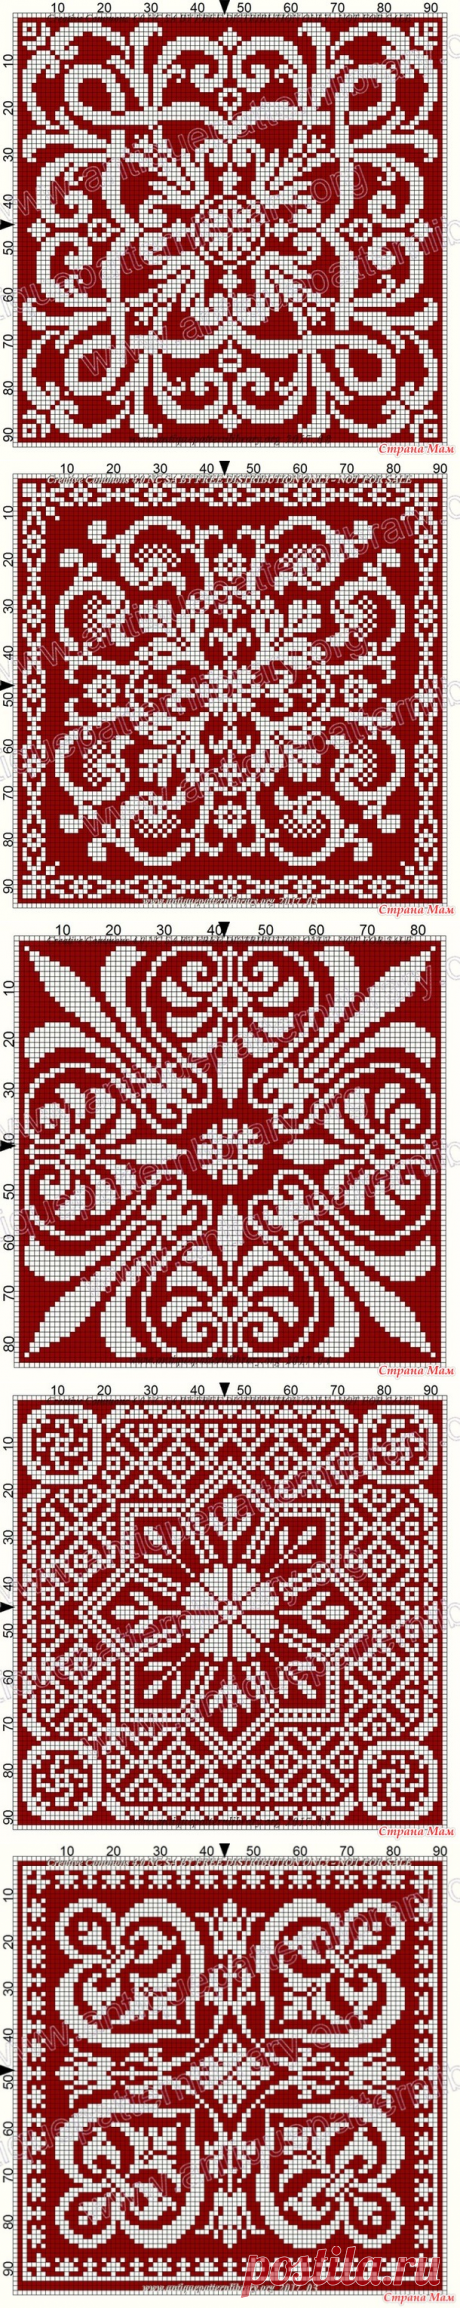 Подборка схем для филейного вязания - Вязание - Страна Мам